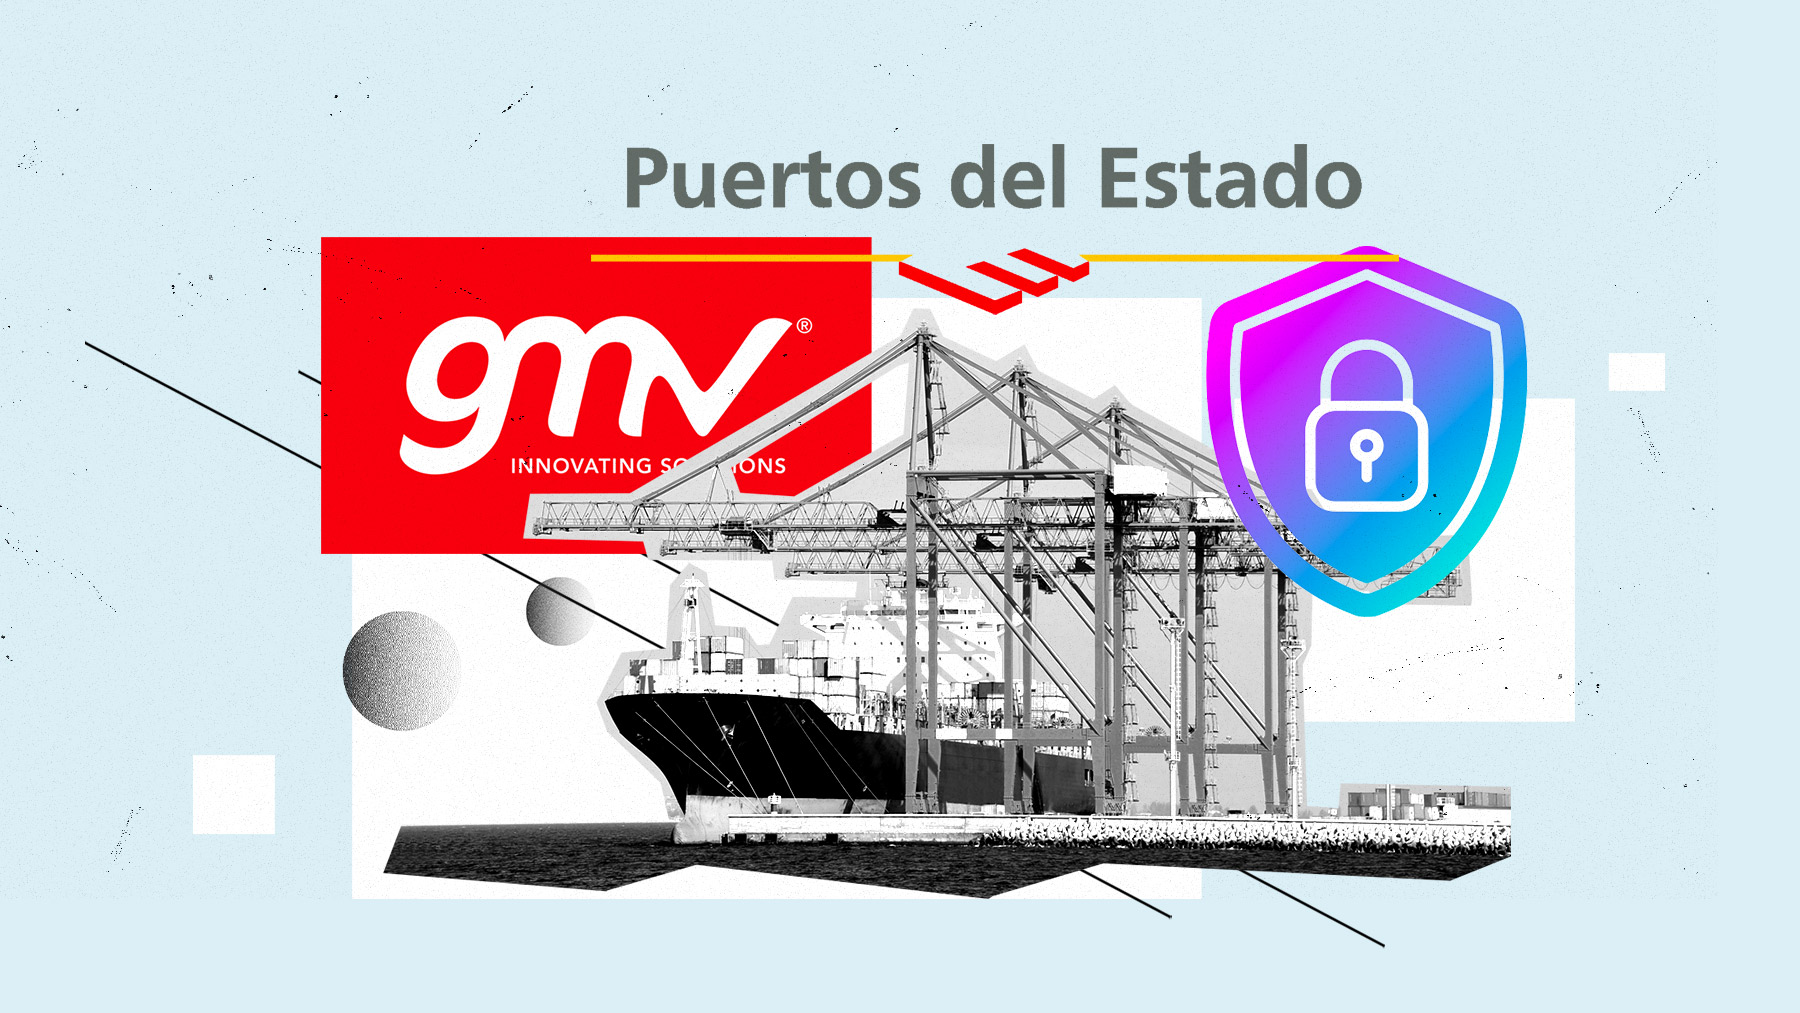 El objetivo es afrontar los «desafíos que emanan de la protección de la red de Puertos del Estado y Autoridades Portuarias y, por extensión, de la comunidad portuaria y ciudadanos»